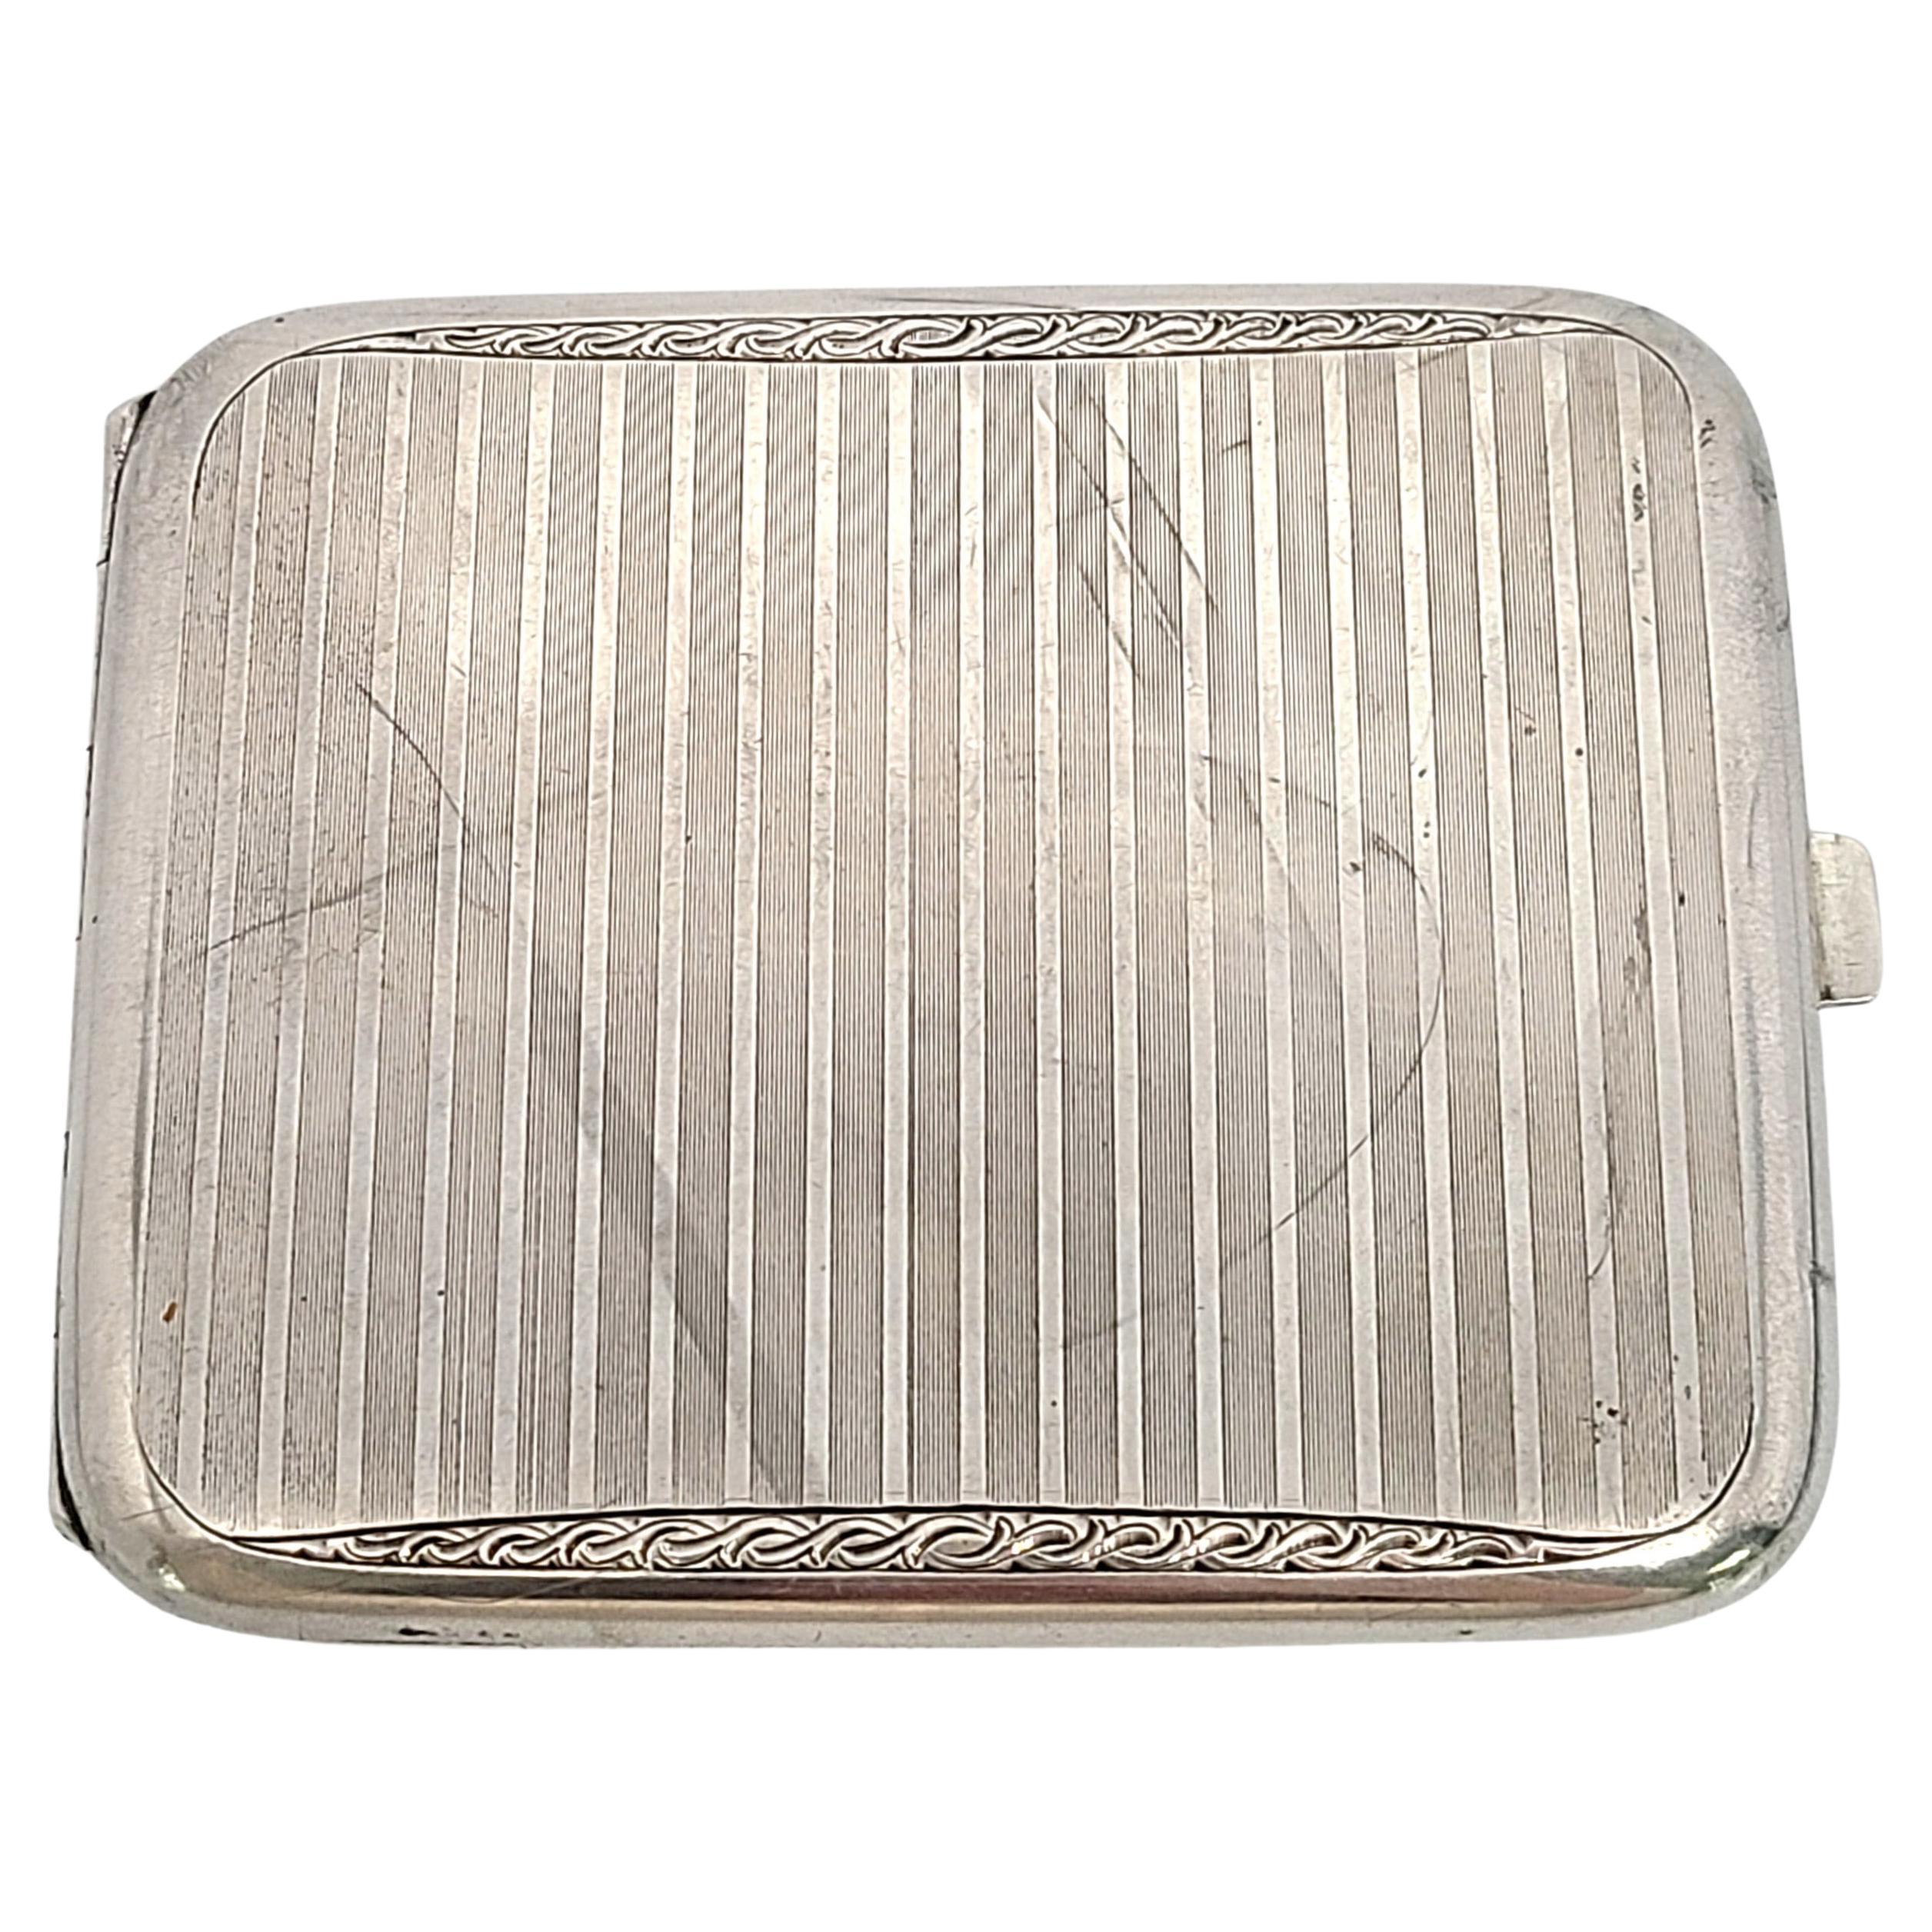 Wimmer & Rieth Germany 900 Silver Cigarette Case